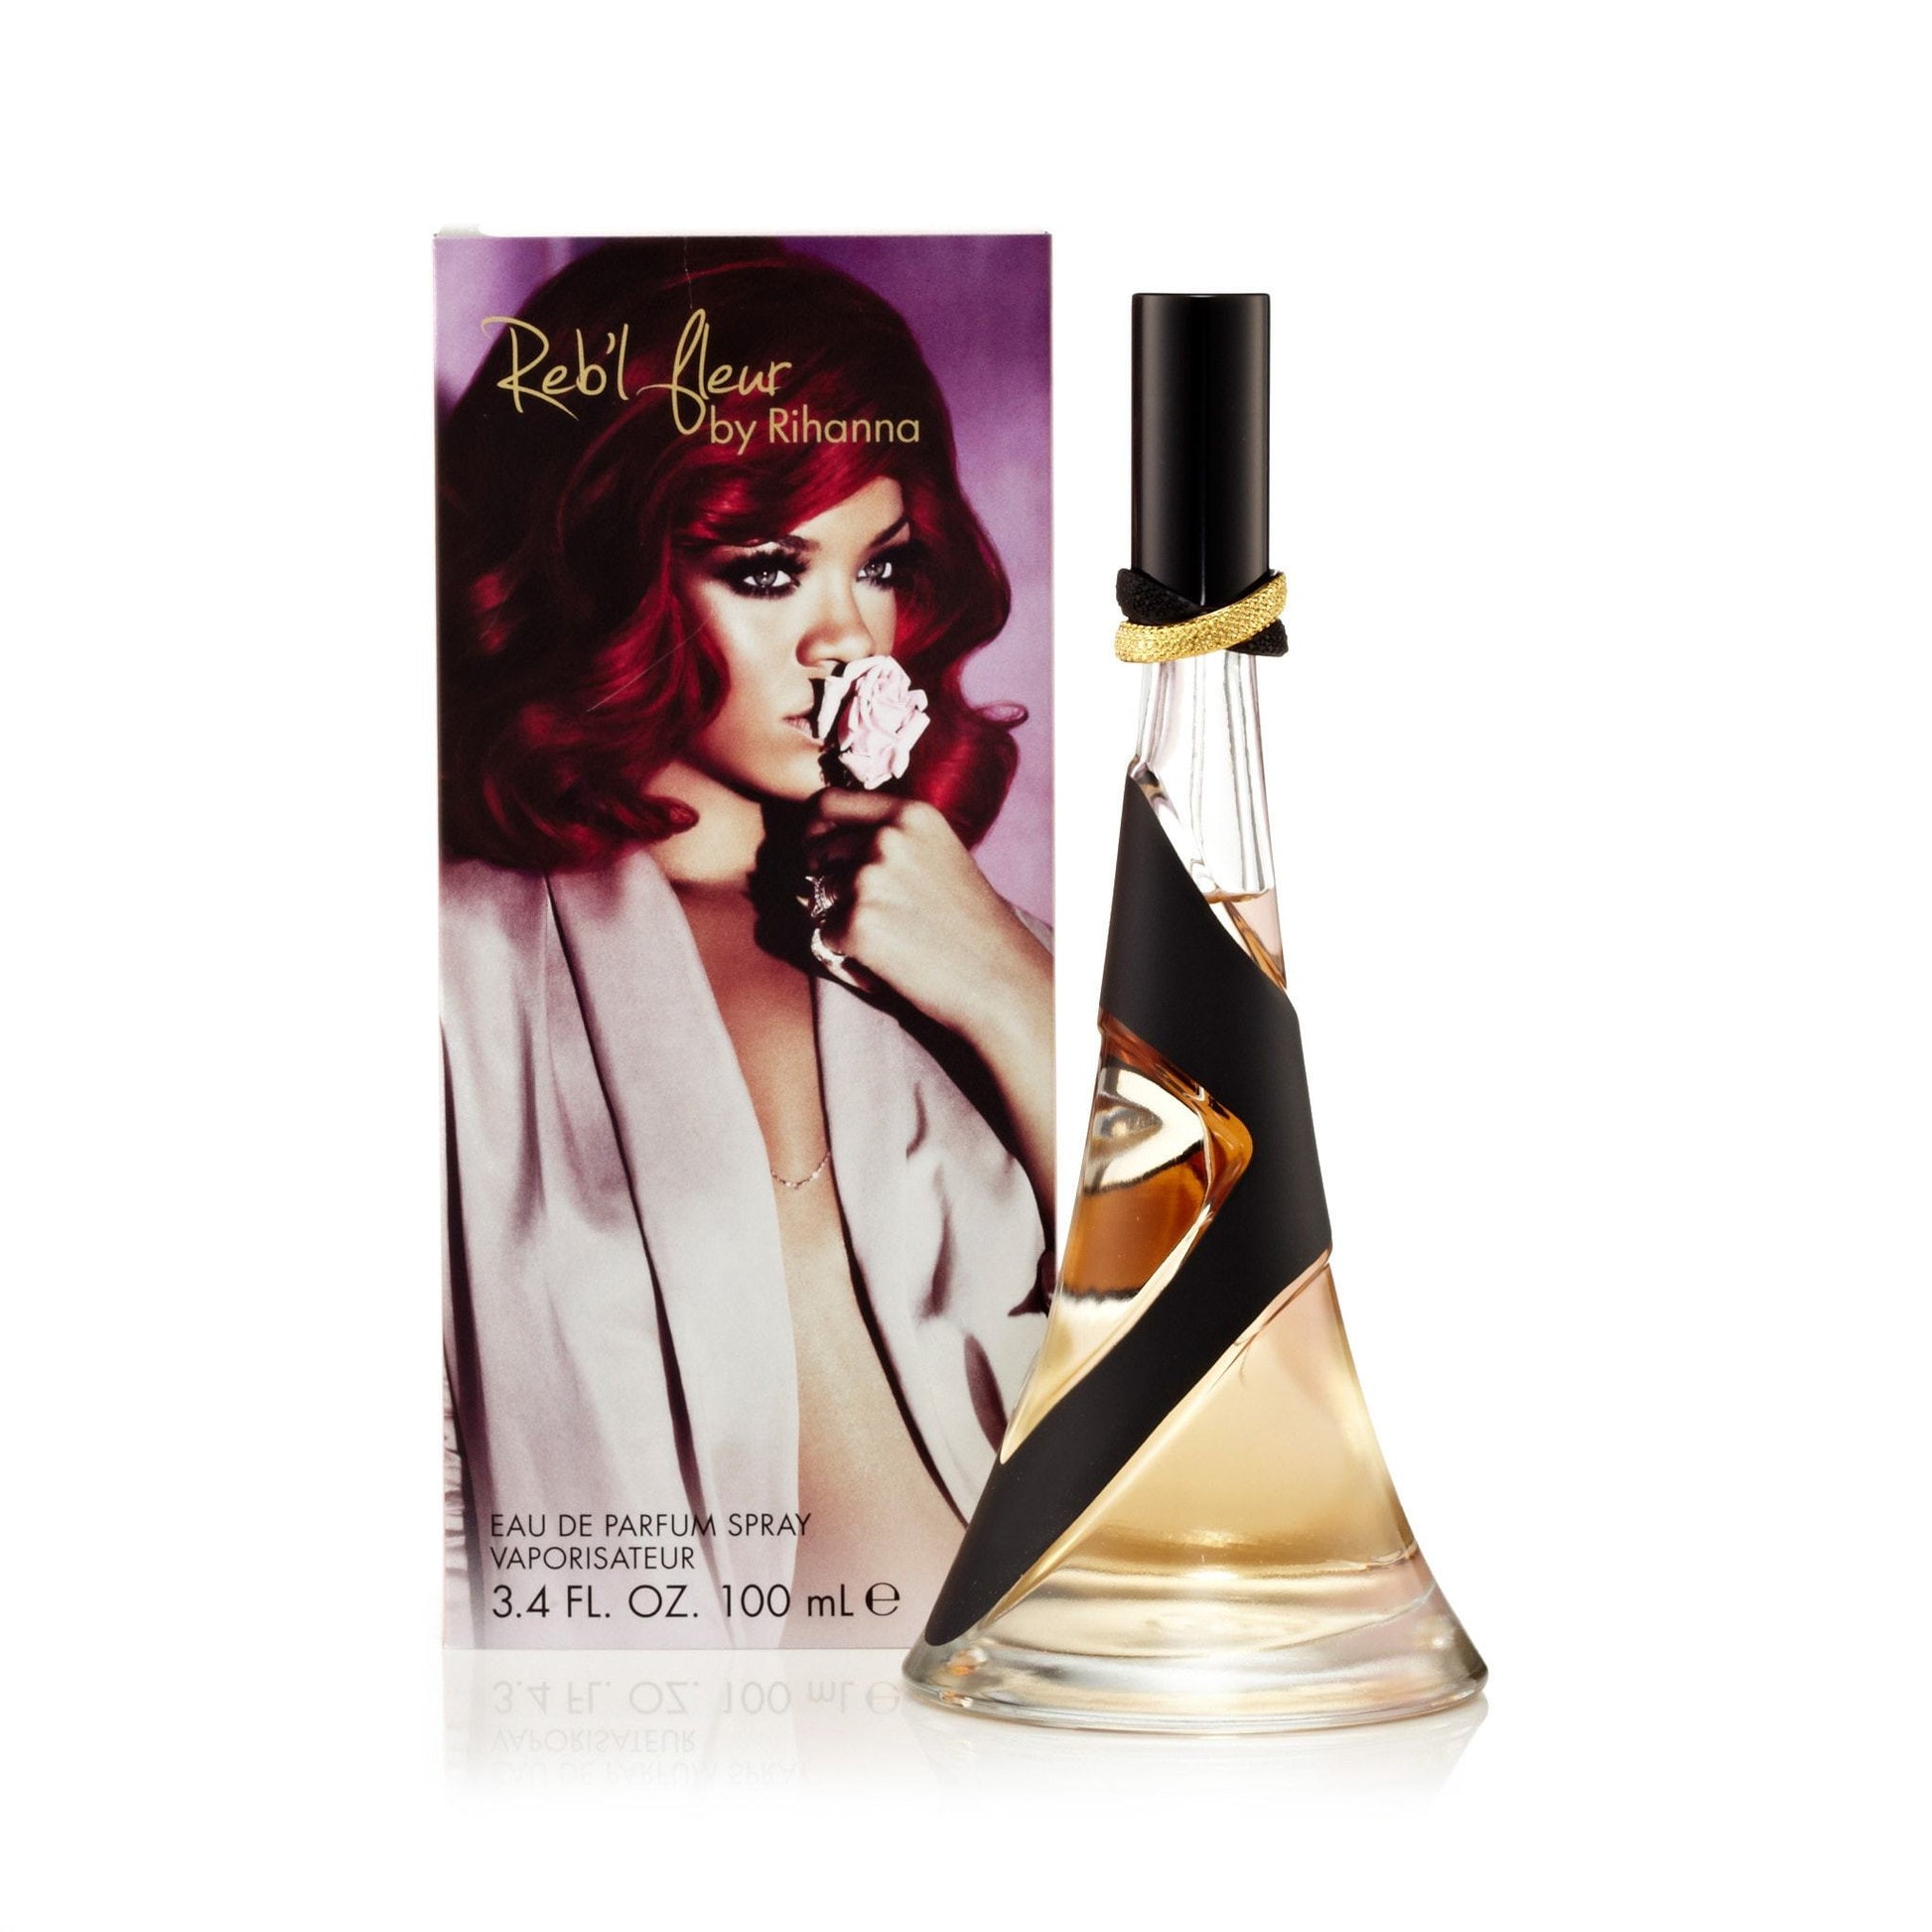 Reb'L Fleur Eau de Parfum Spray for Women by Rihanna, Product image 1